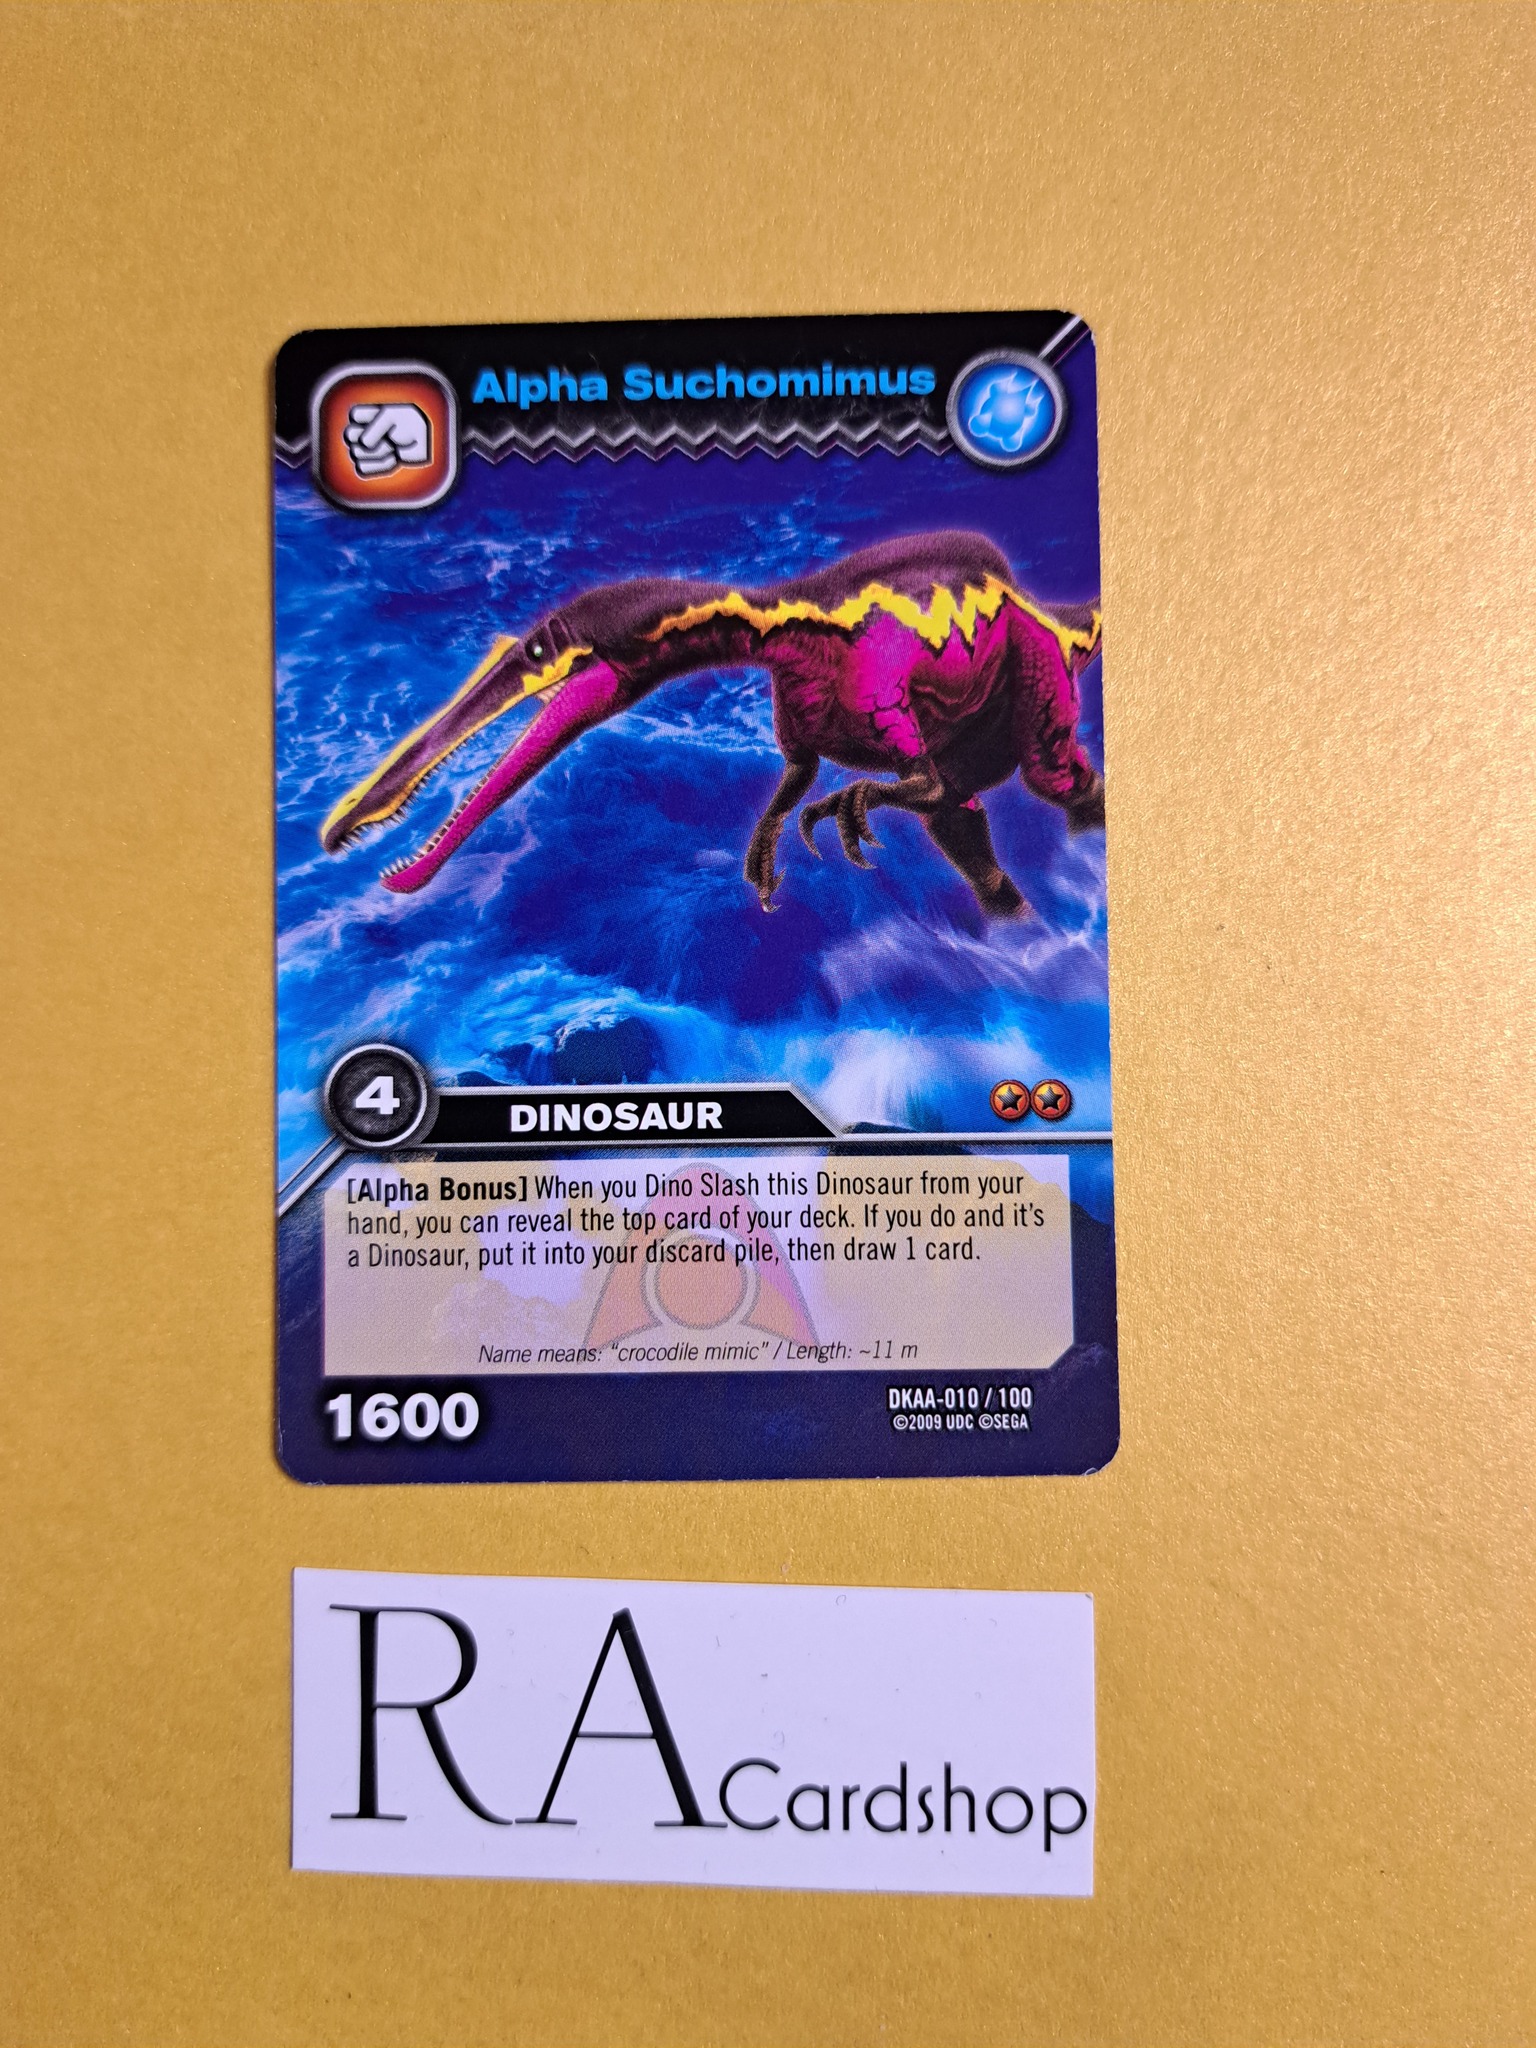 Alpha Suchomimus DKAA-010/100 Dinosaur King